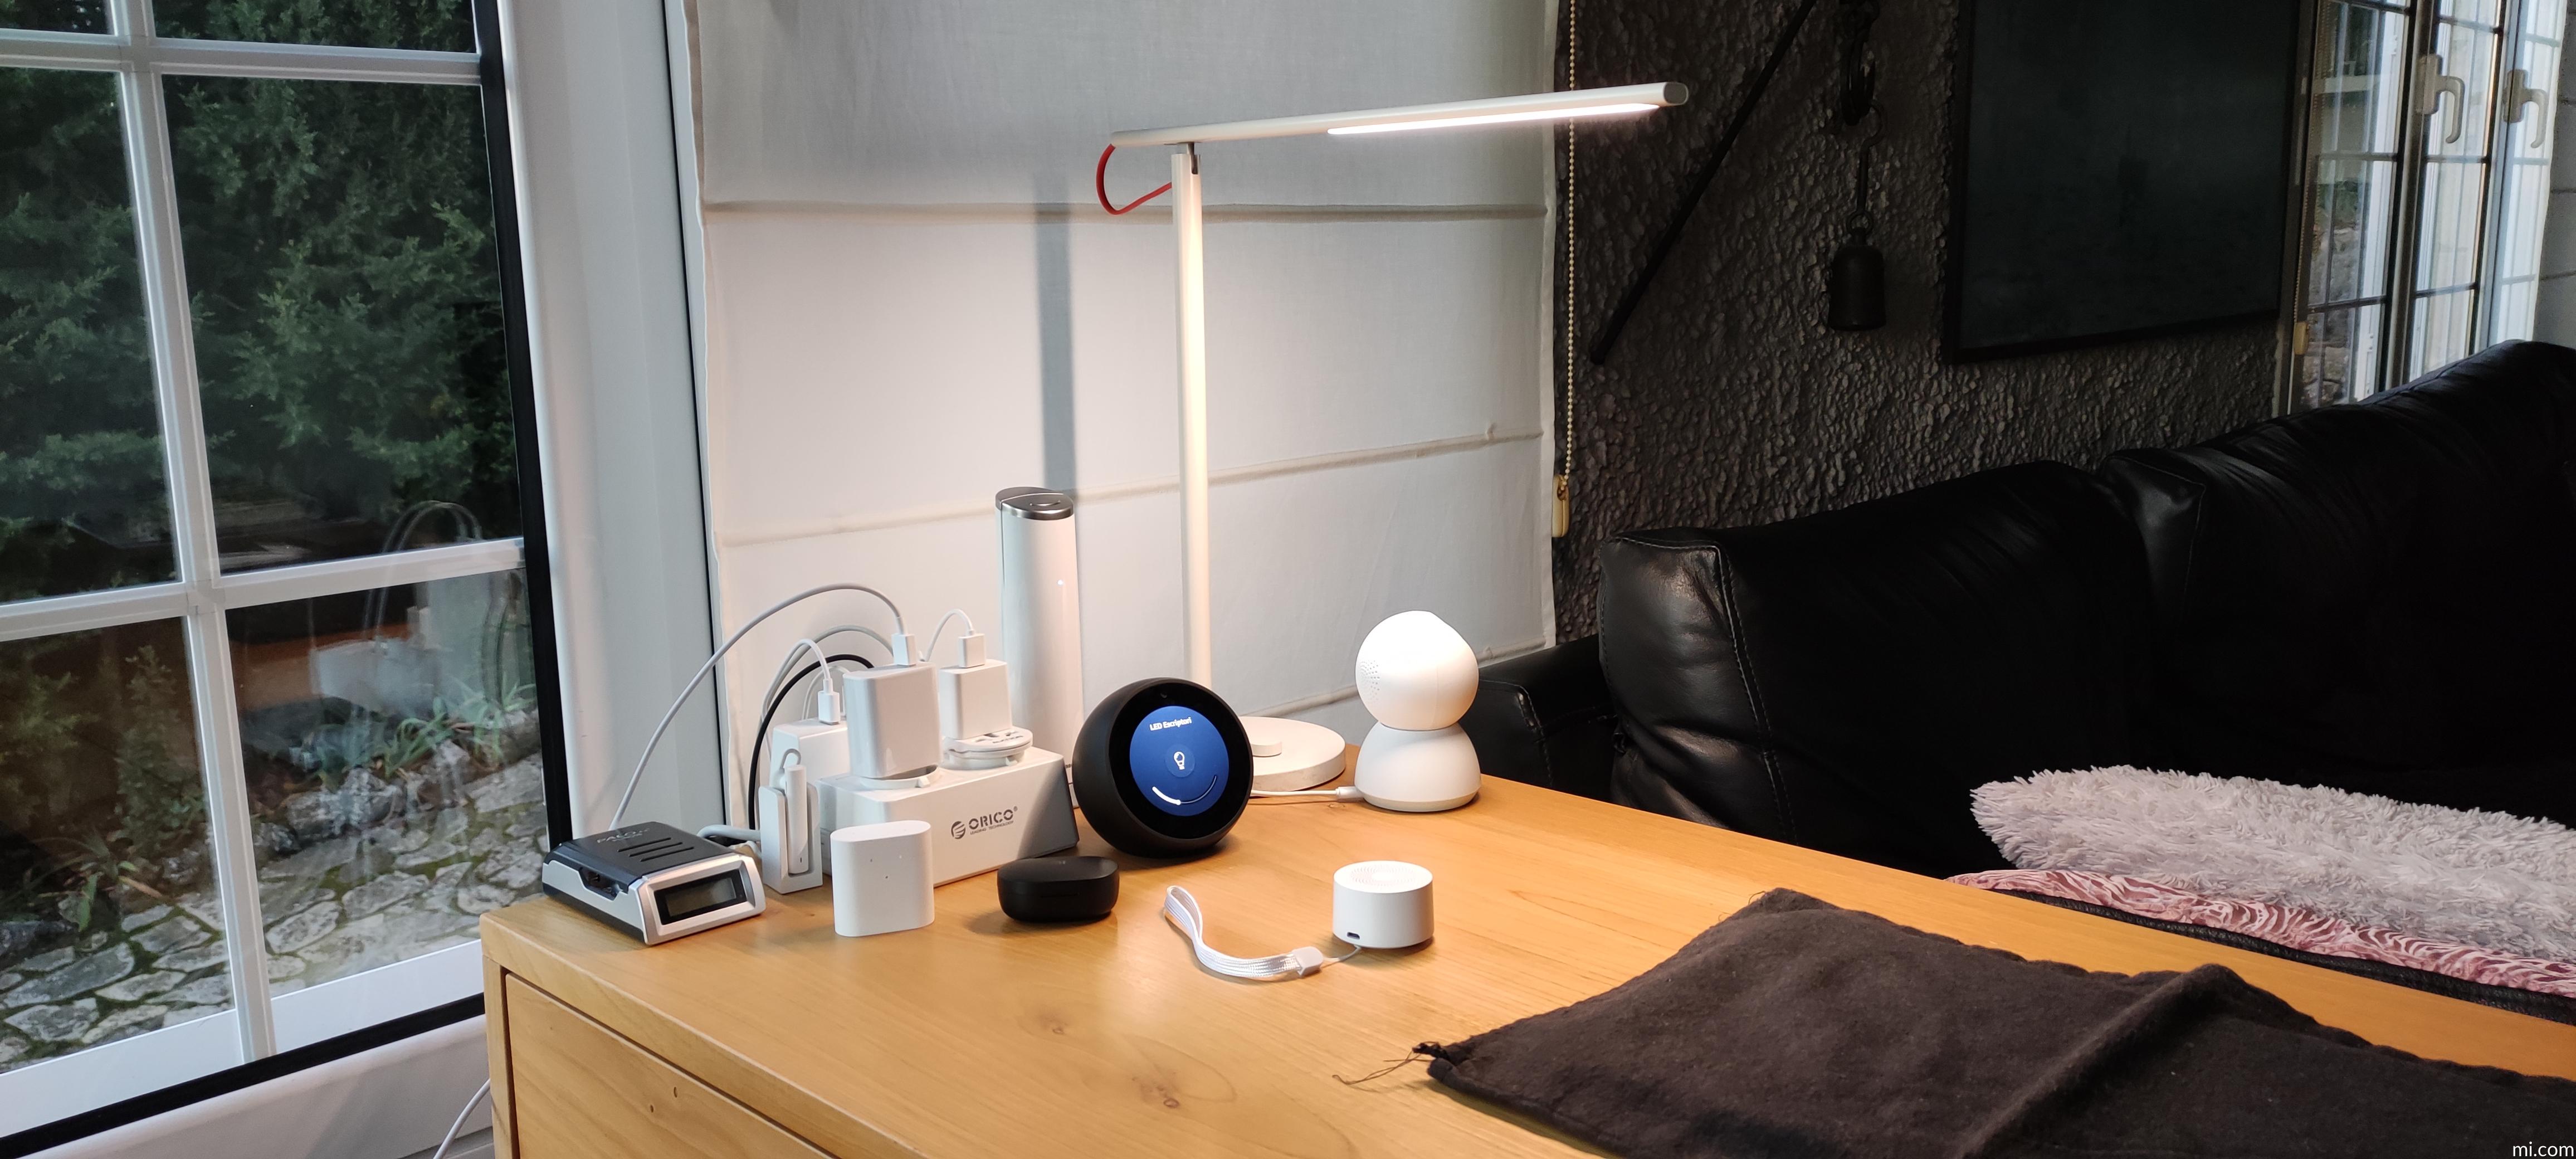 Xiaomi lanza una lámpara LED de escritorio con cámara y conectada a Internet